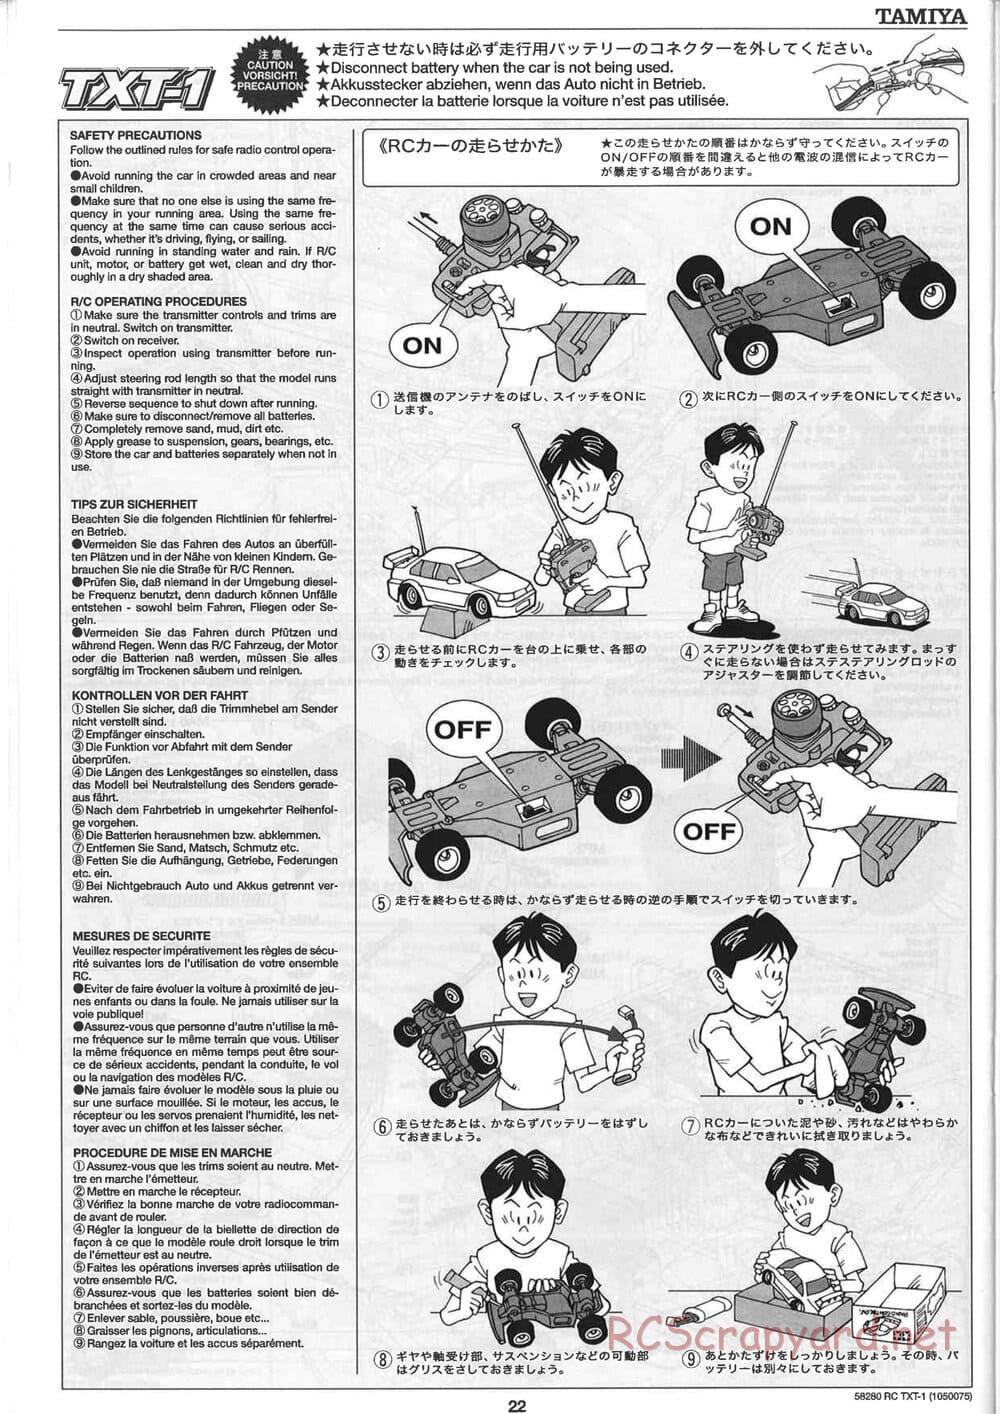 Tamiya - TXT-1 (Tamiya Xtreme Truck) Chassis - Manual - Page 22